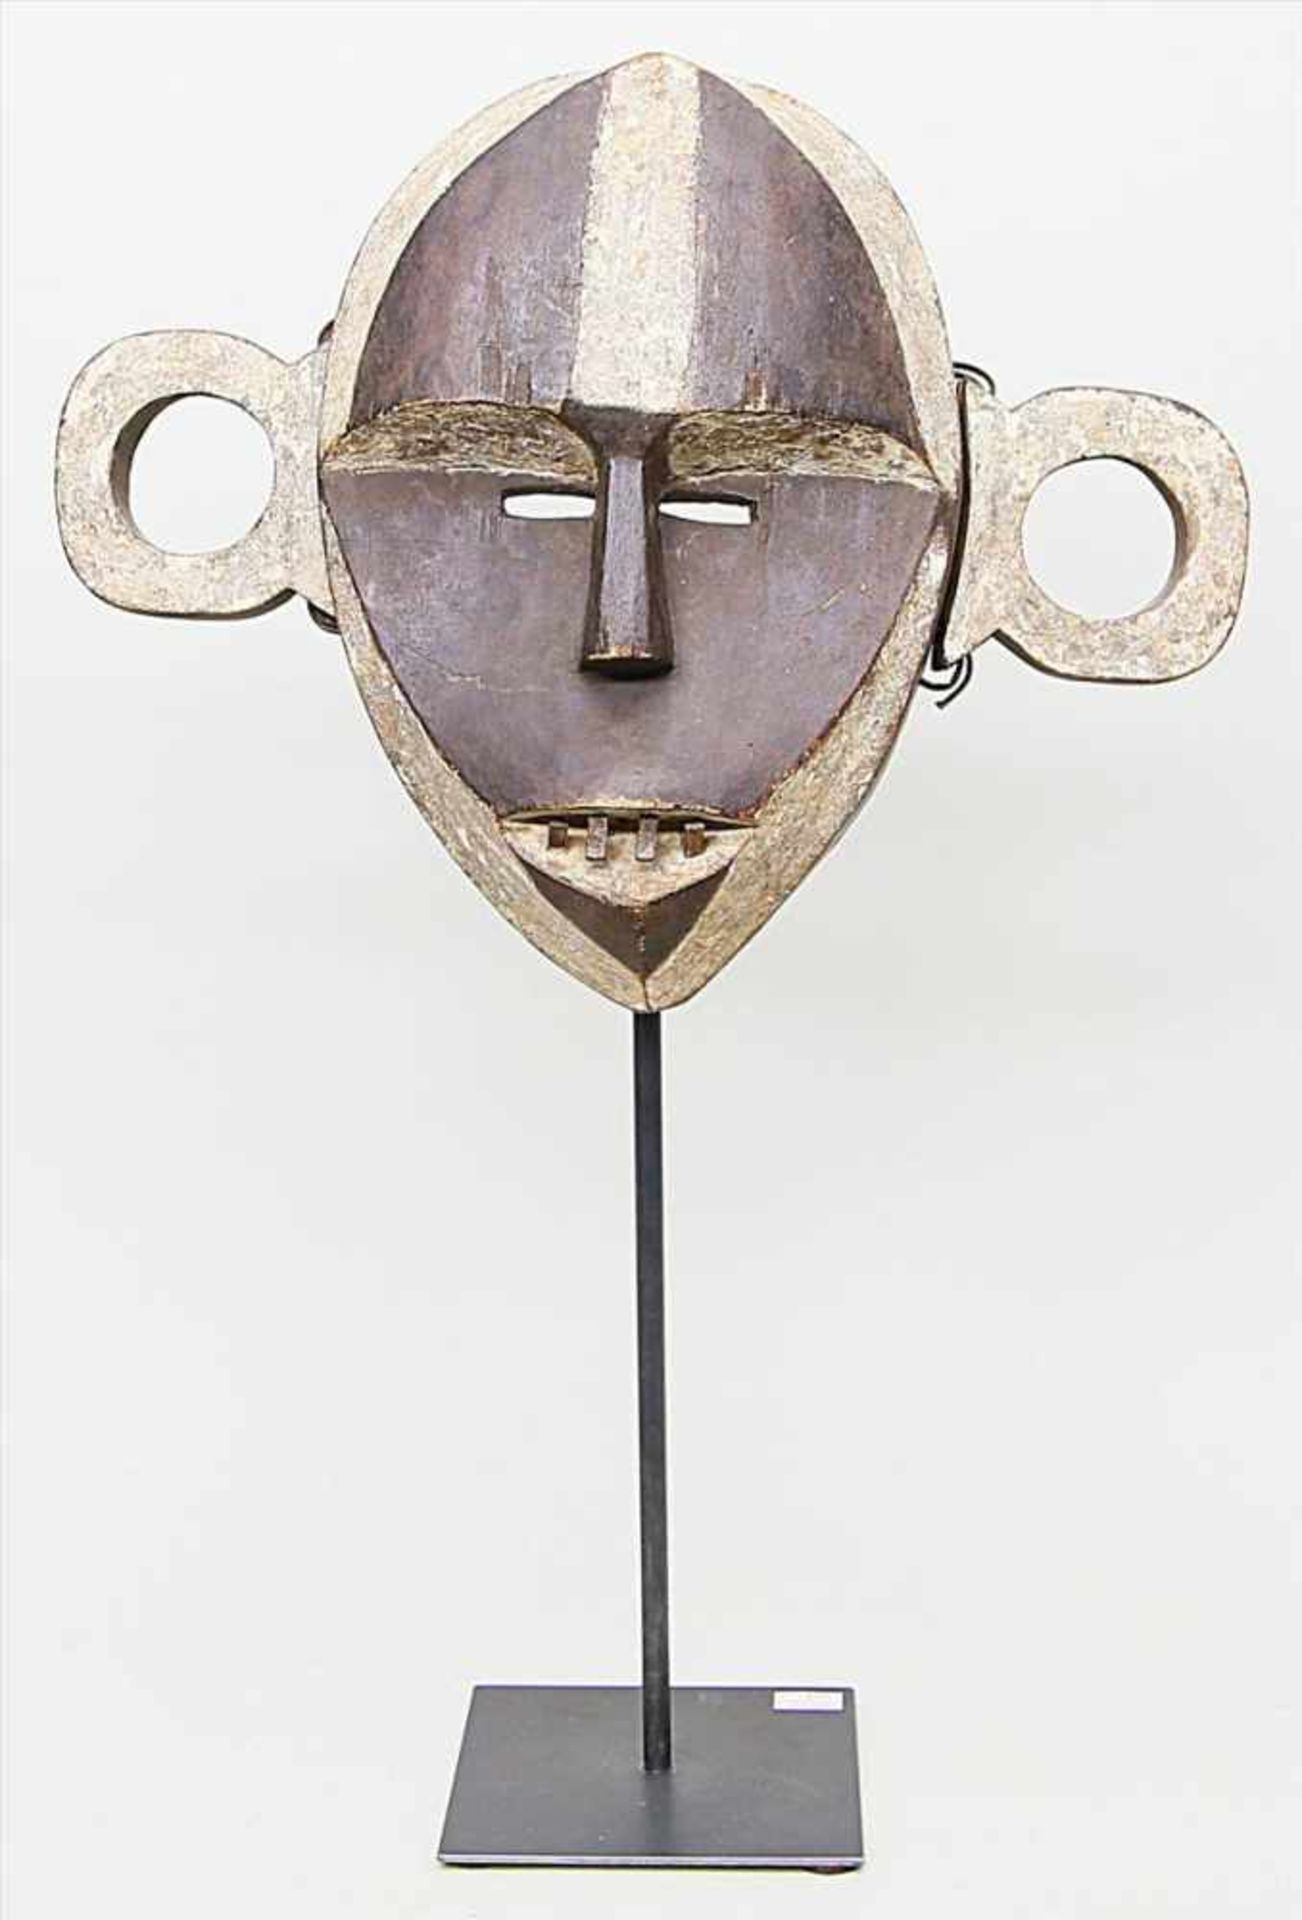 Pongdudu-Maske, Boa Uele.Holz, teils weiß gefasst, eingesetzte Ohren. Altersspuren, l. best. Boa